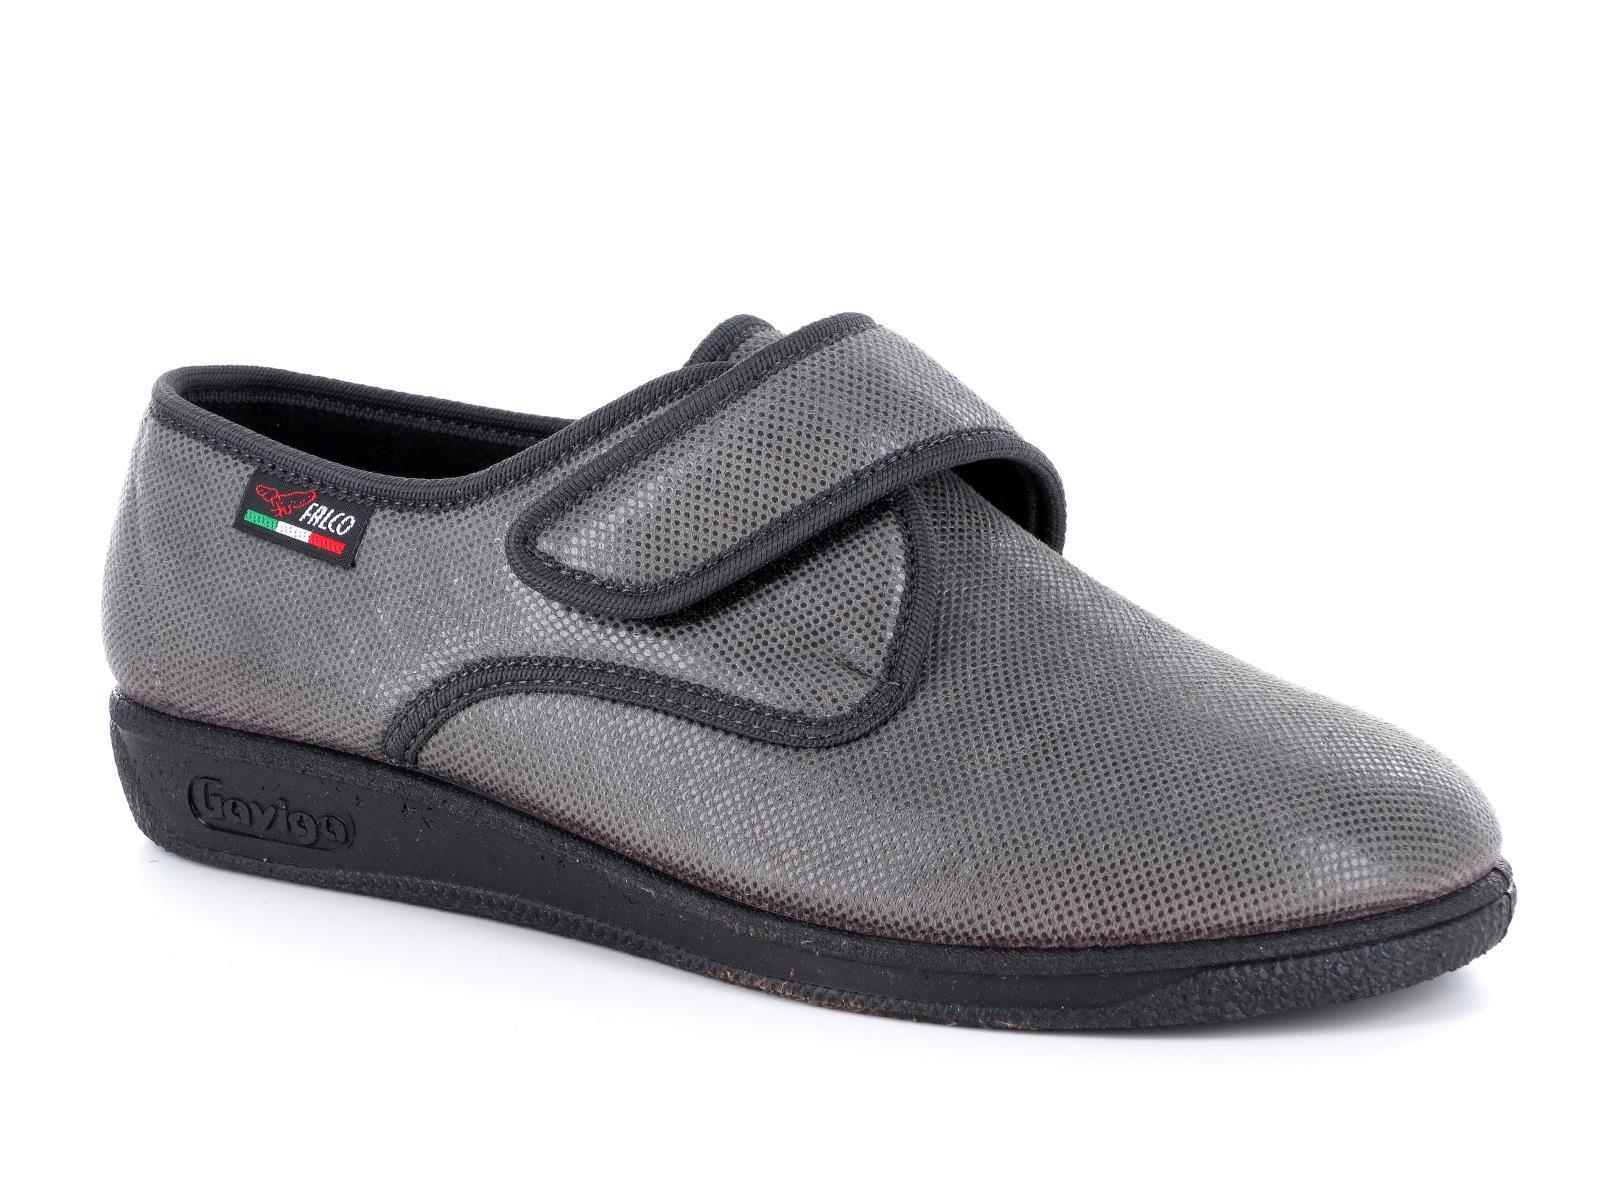 Gaviga 6926 Scarpe pantofole comfort da donna in pelle sintetica con strappo nel colore grigio e nero